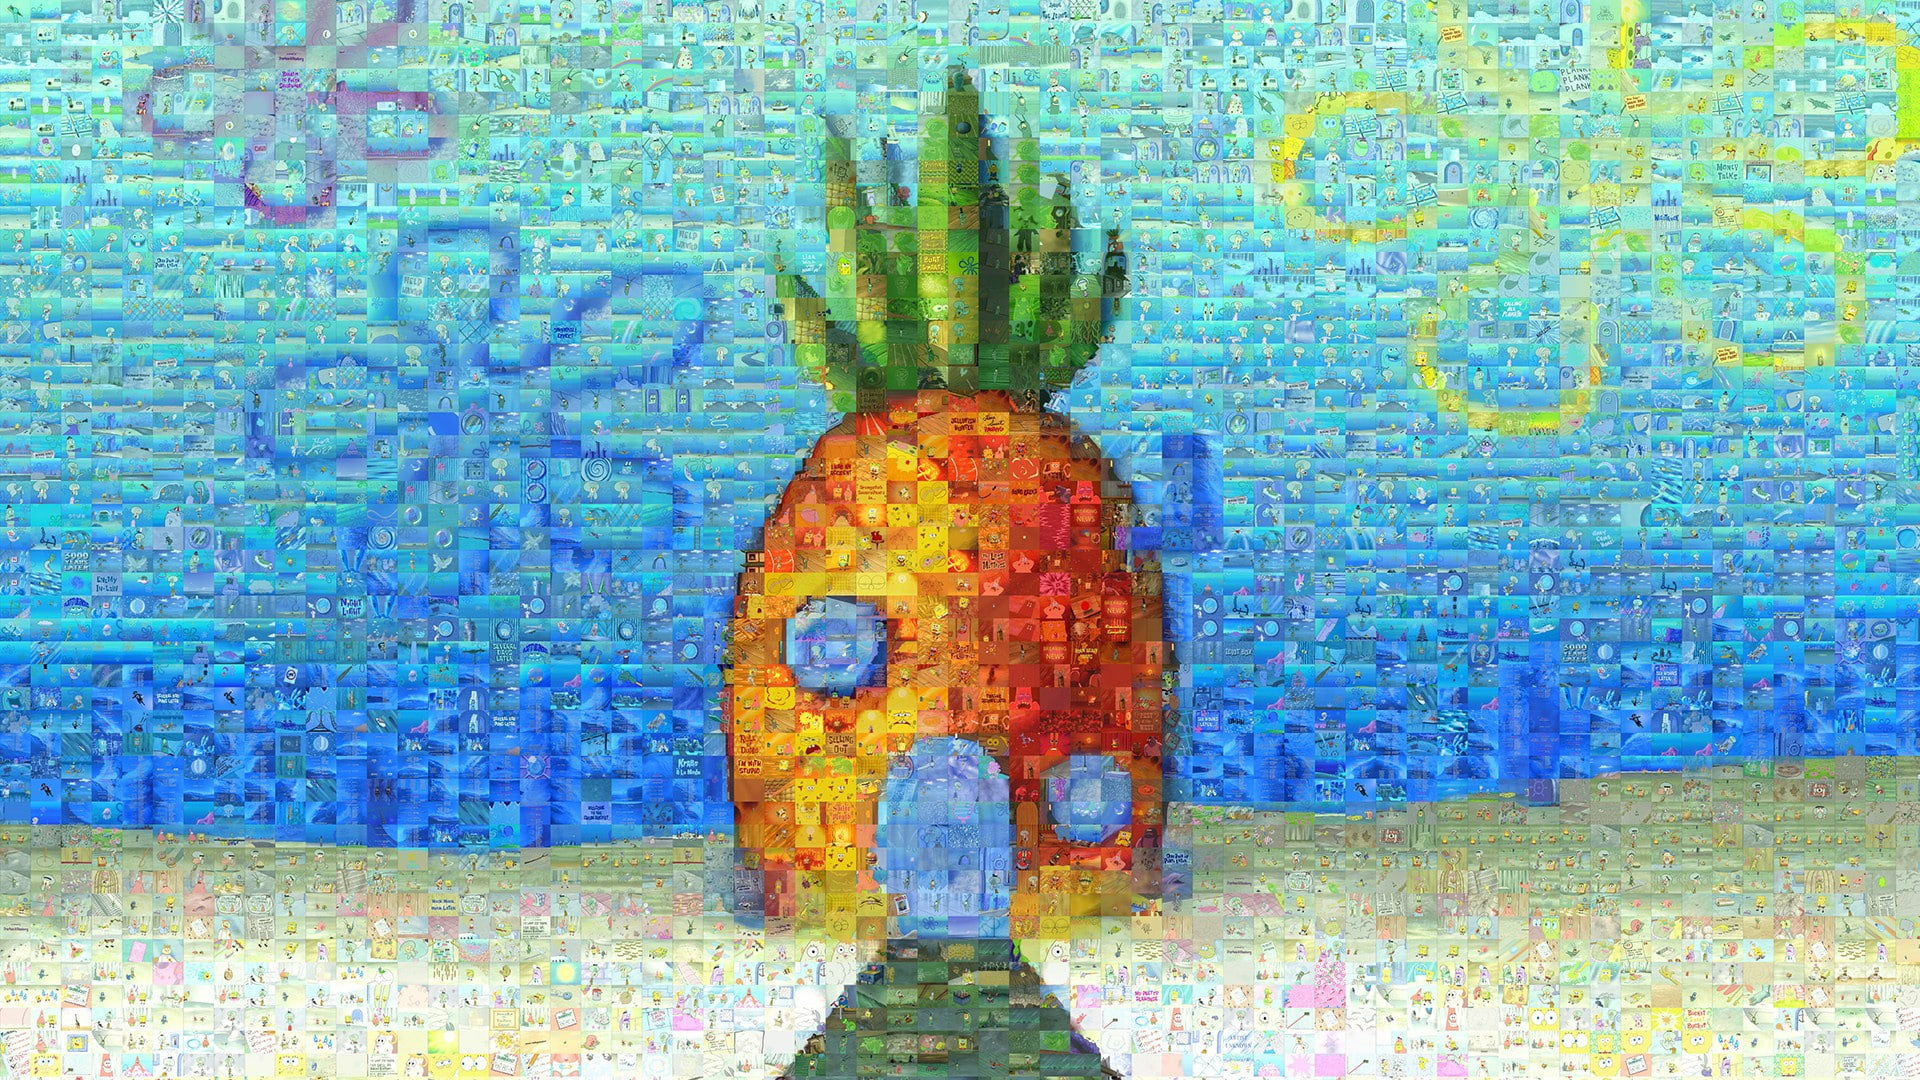 Wallpaper Spongebob Squarepants, Pineapple